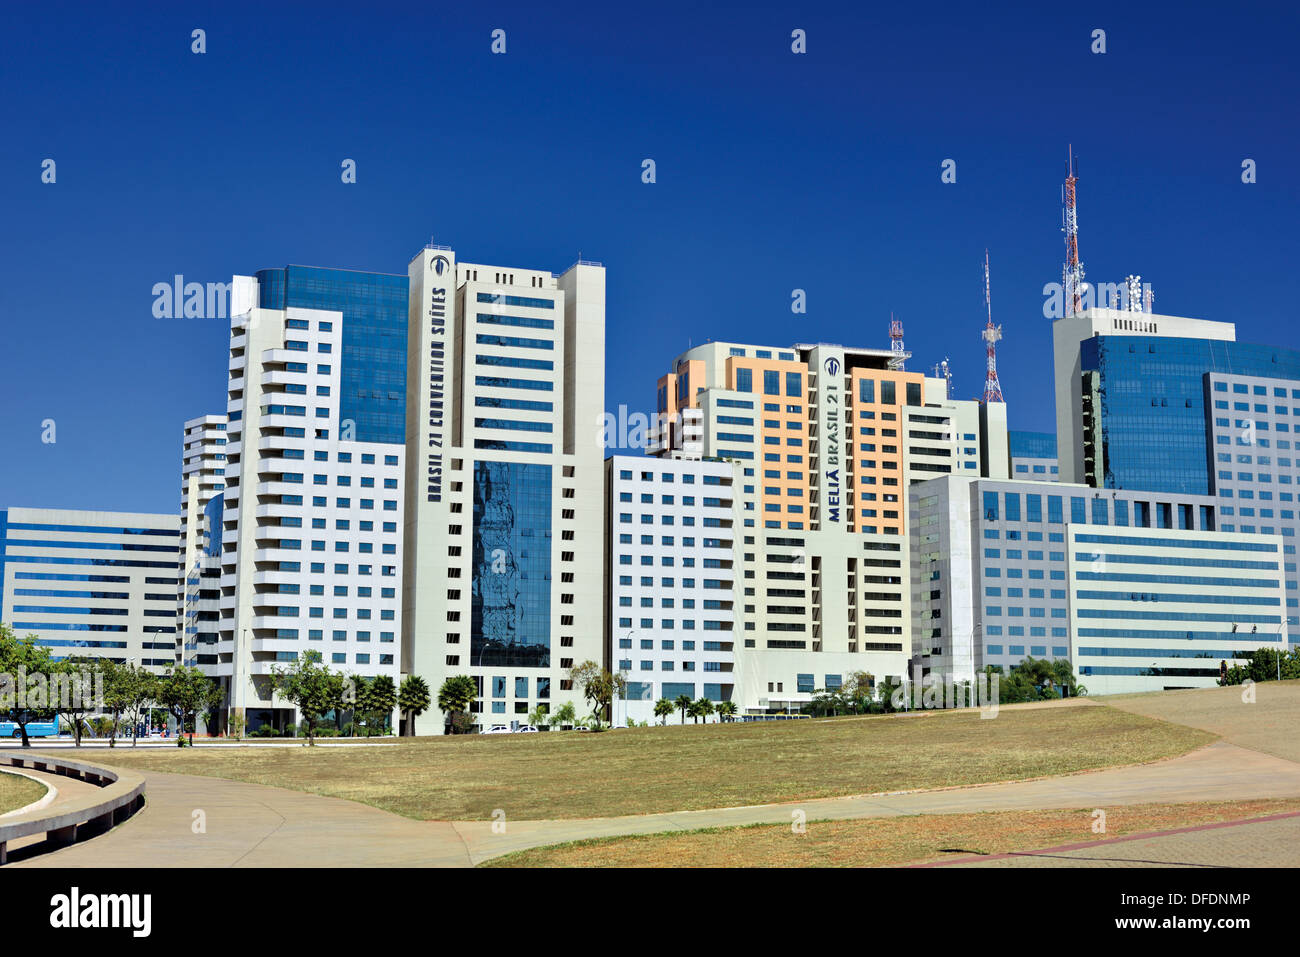 Il Brasile, Brasilia: moderno Hotel Business e torri dell'ala settentrionale Foto Stock